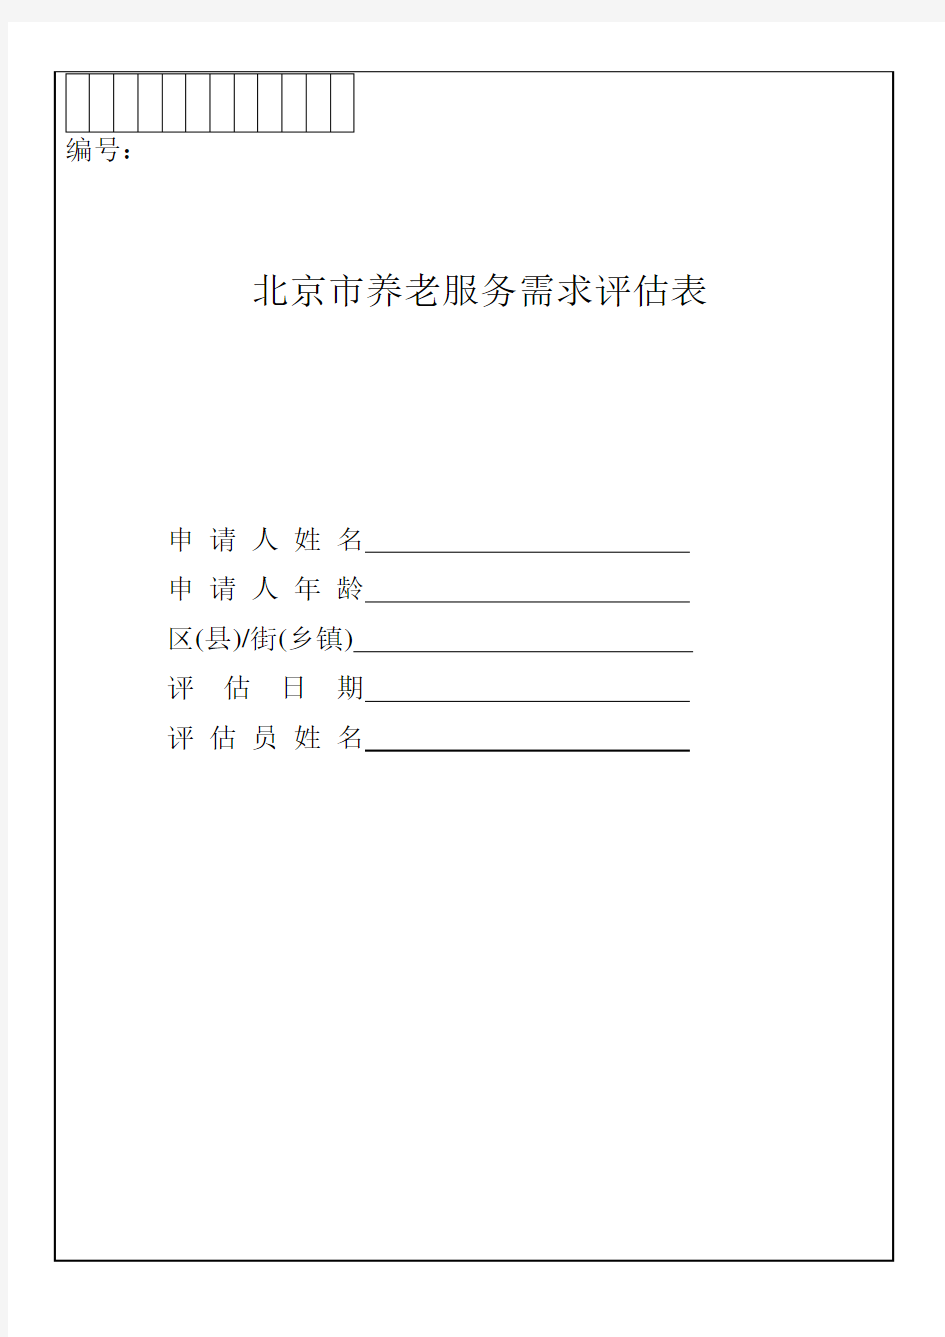 北京市养老服务需求评估表 2015年